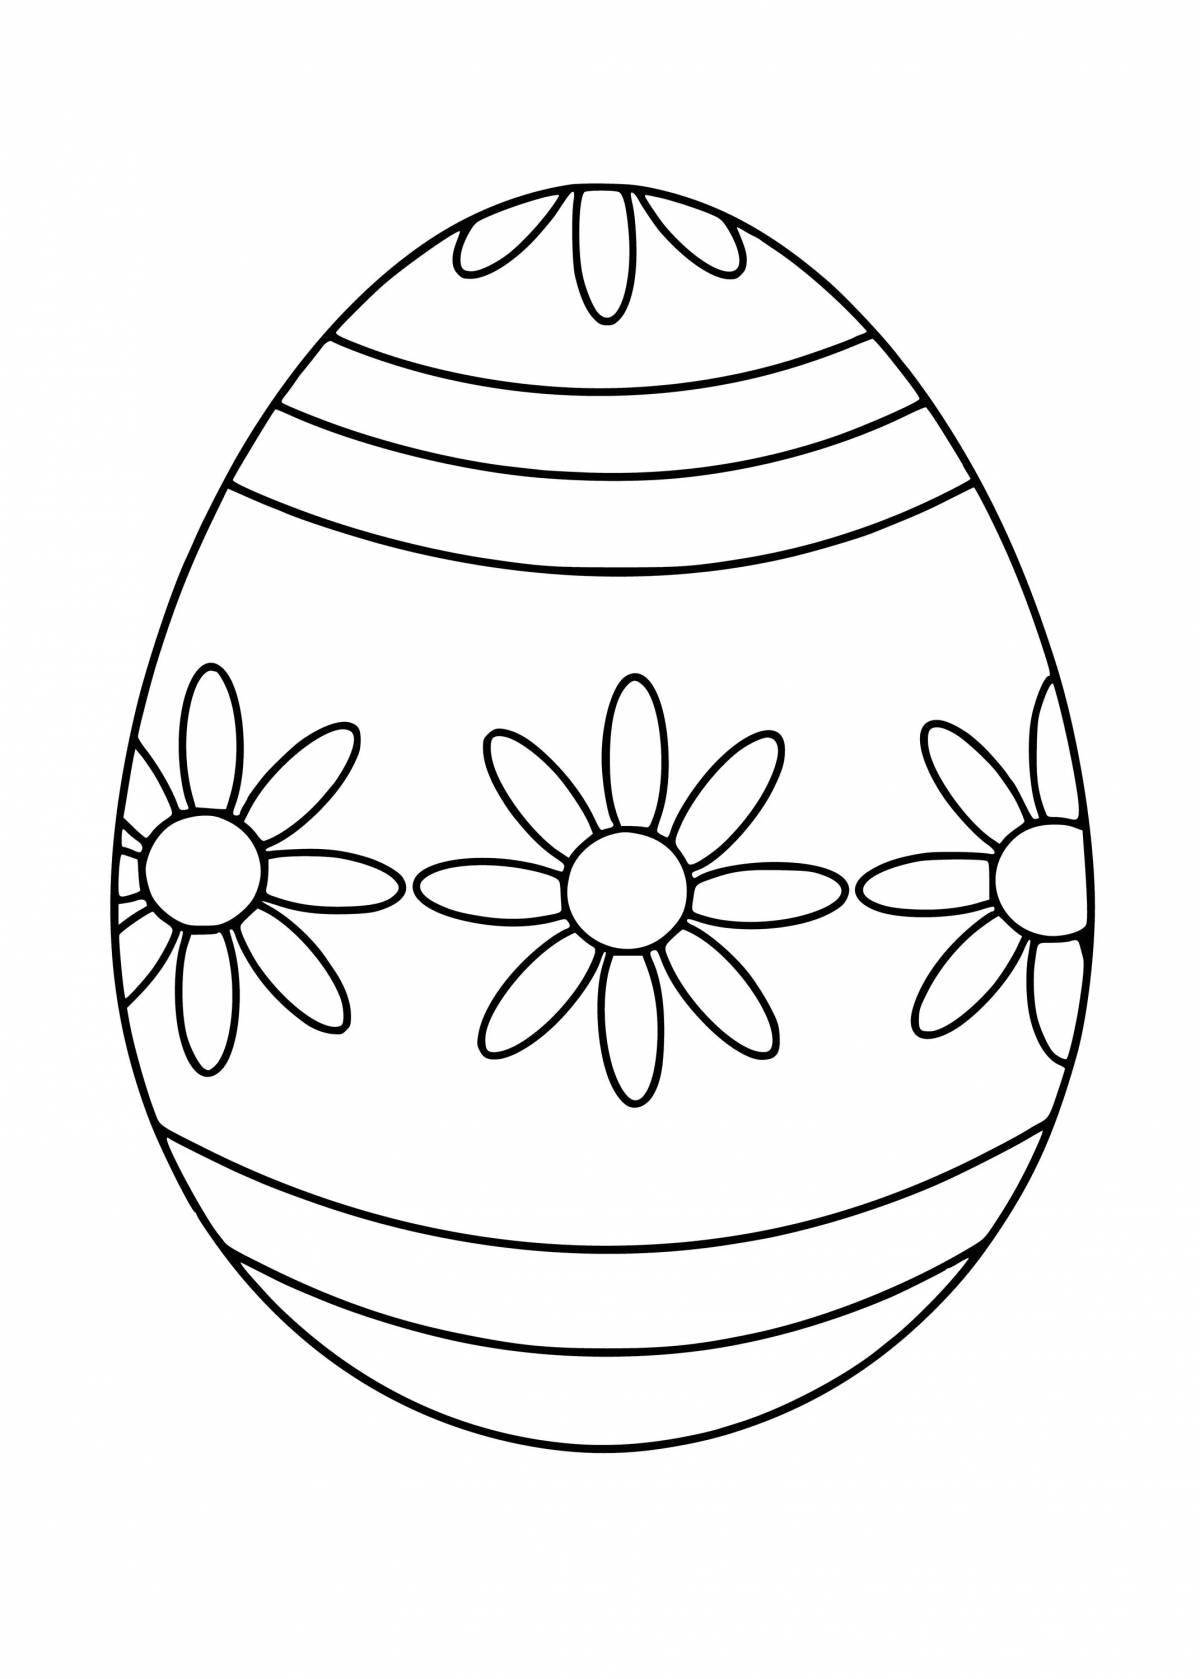 A fun Easter egg coloring book